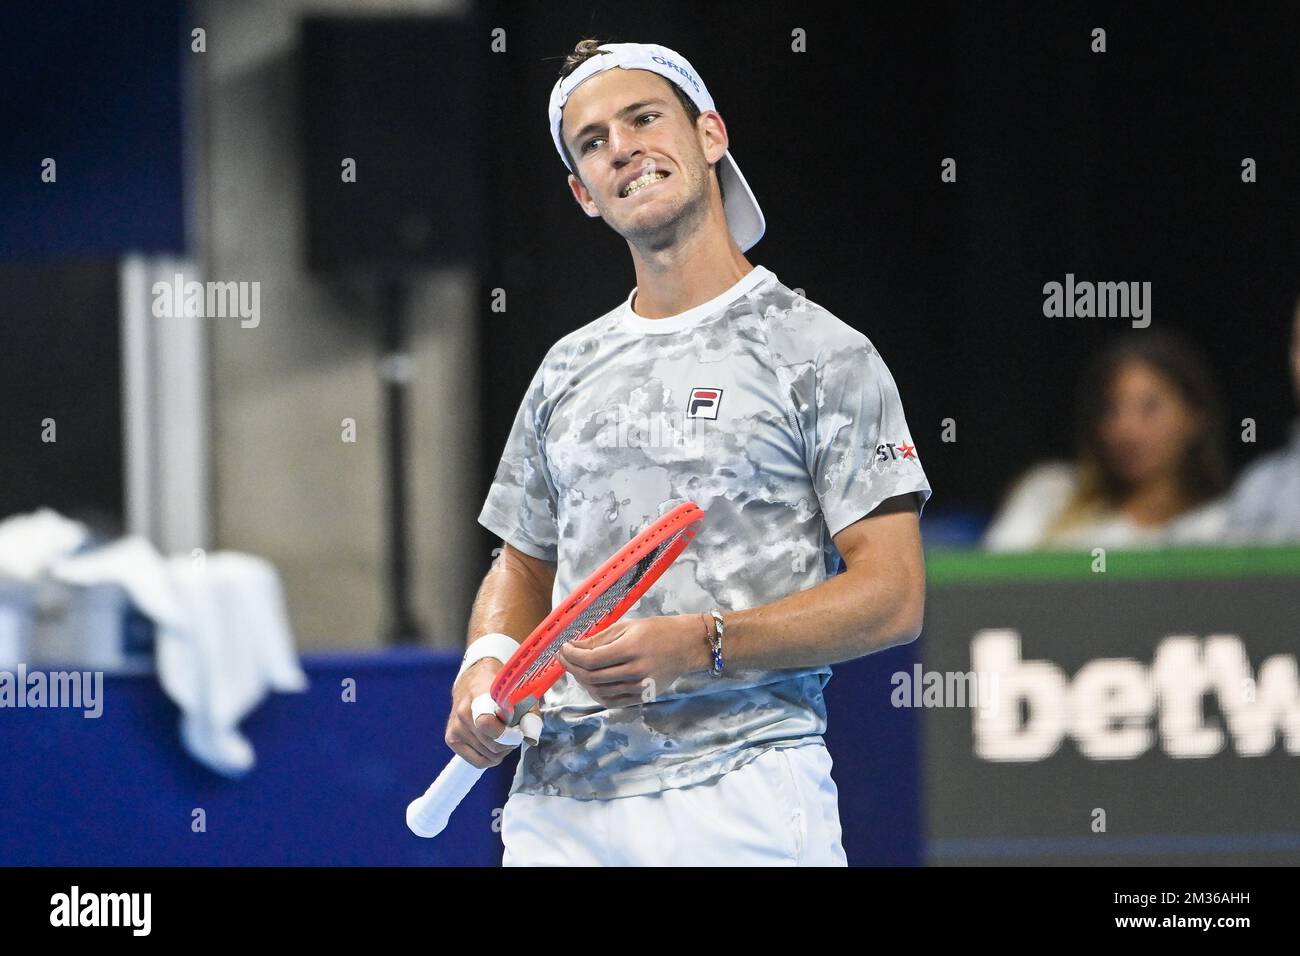 Diego Schwartzman d'Argentine réagit lors d'un match de singles entre la Brooksby des États-Unis et la Schwartzman Argentine, dans les demi-finales du tournoi ATP de tennis ouvert européen, à Anvers, le samedi 23 octobre 2021. BELGA PHOTO LAURIE DIEFFEMBACQ Banque D'Images